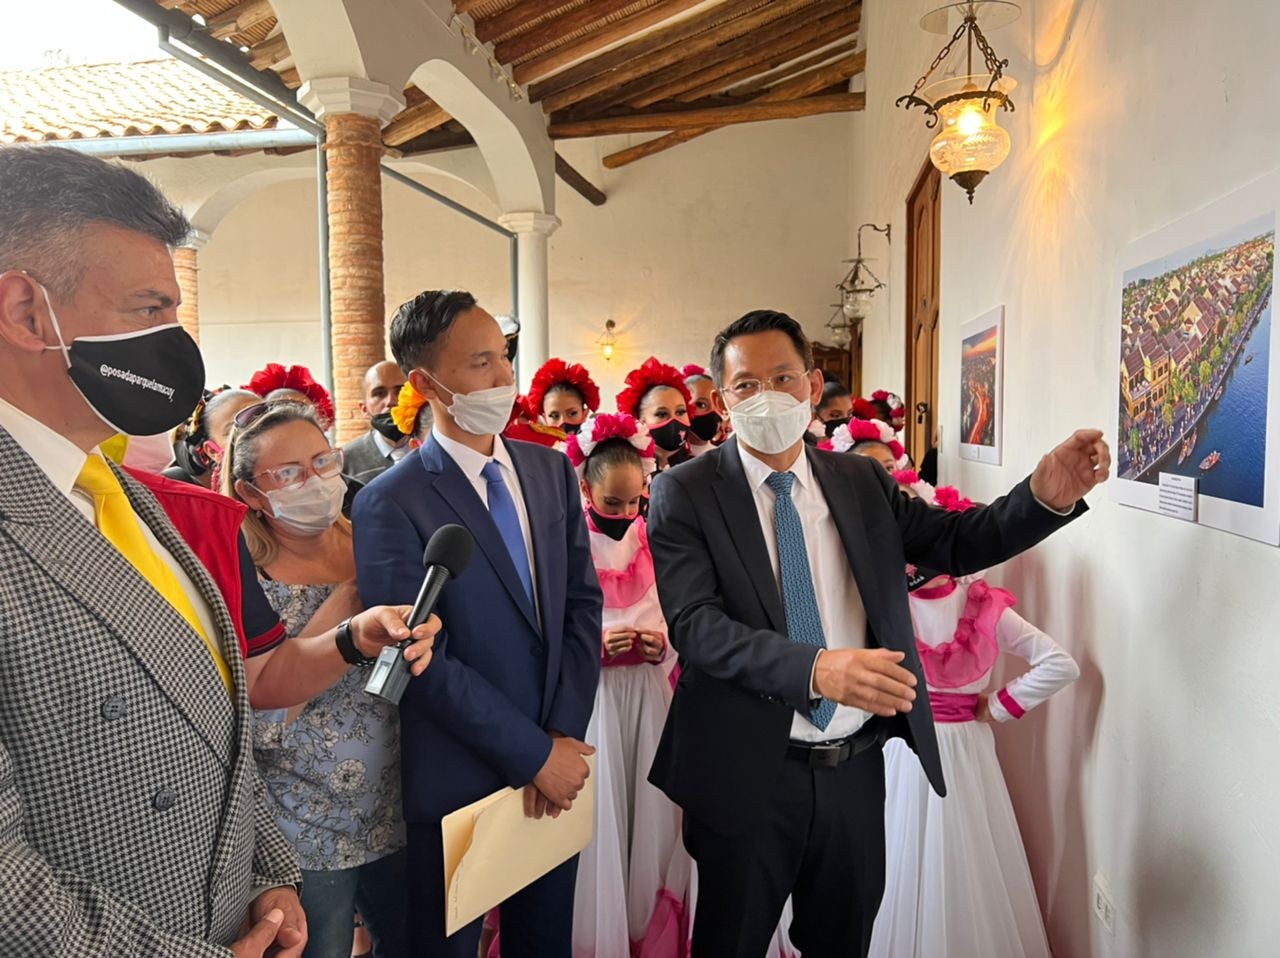 Đại sứ quán đã tổ chức buổi triển lãm ảnh và giới thiệu ẩm thực nhằm quảng bá đất nước, văn hóa, con người Việt Nam tại Bảo tàng Nghệ thuật Mérida.